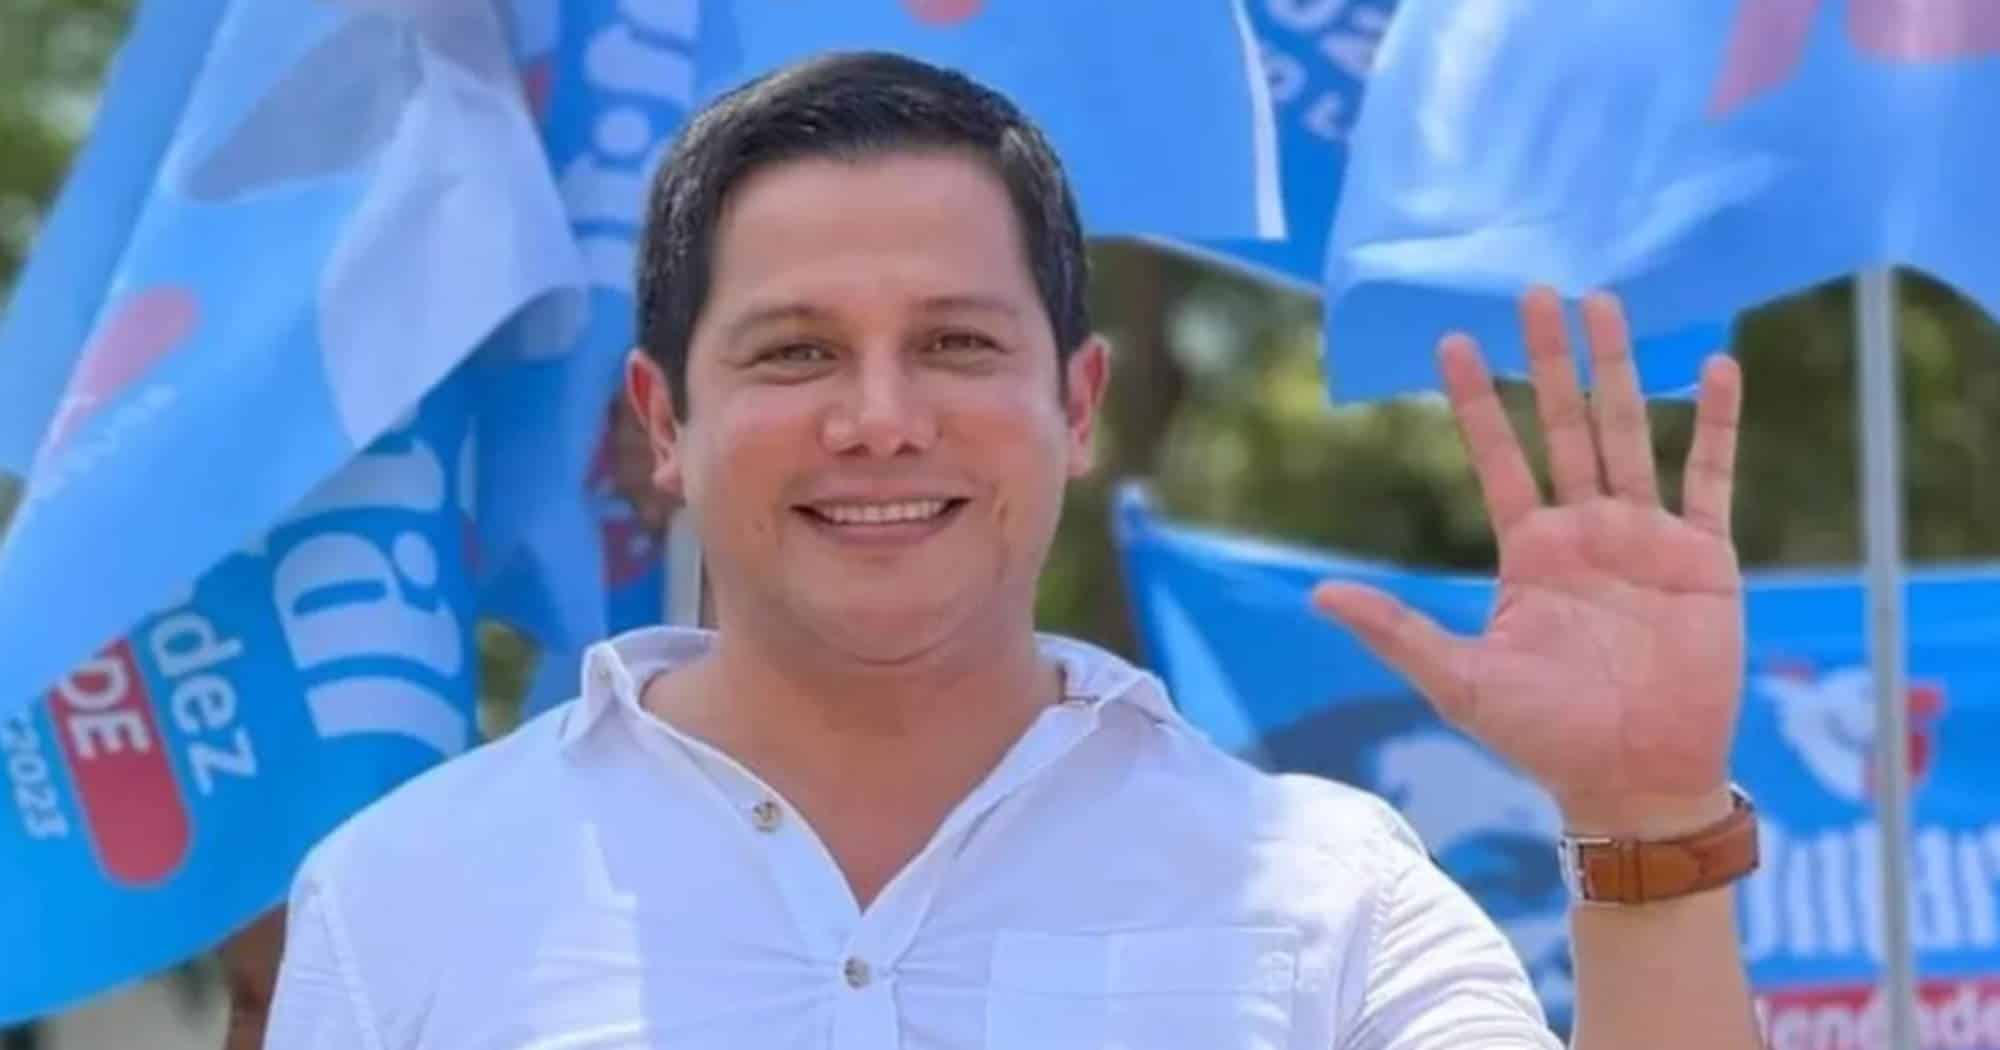 Ο υποψήφιος Δήμαρχος που δολοφονήθηκε στον Ισημερινό